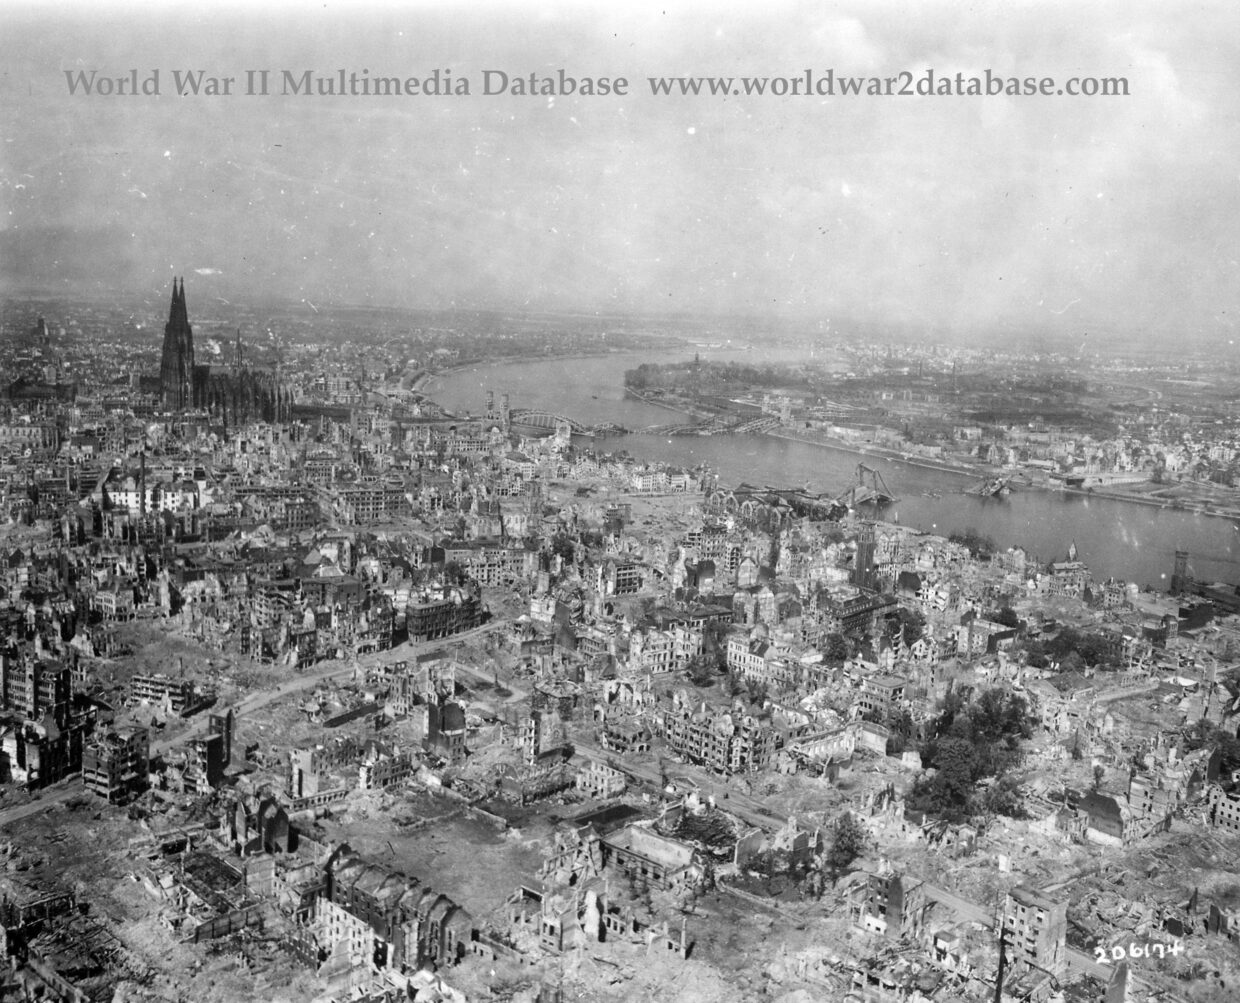 Devastation of Cologne